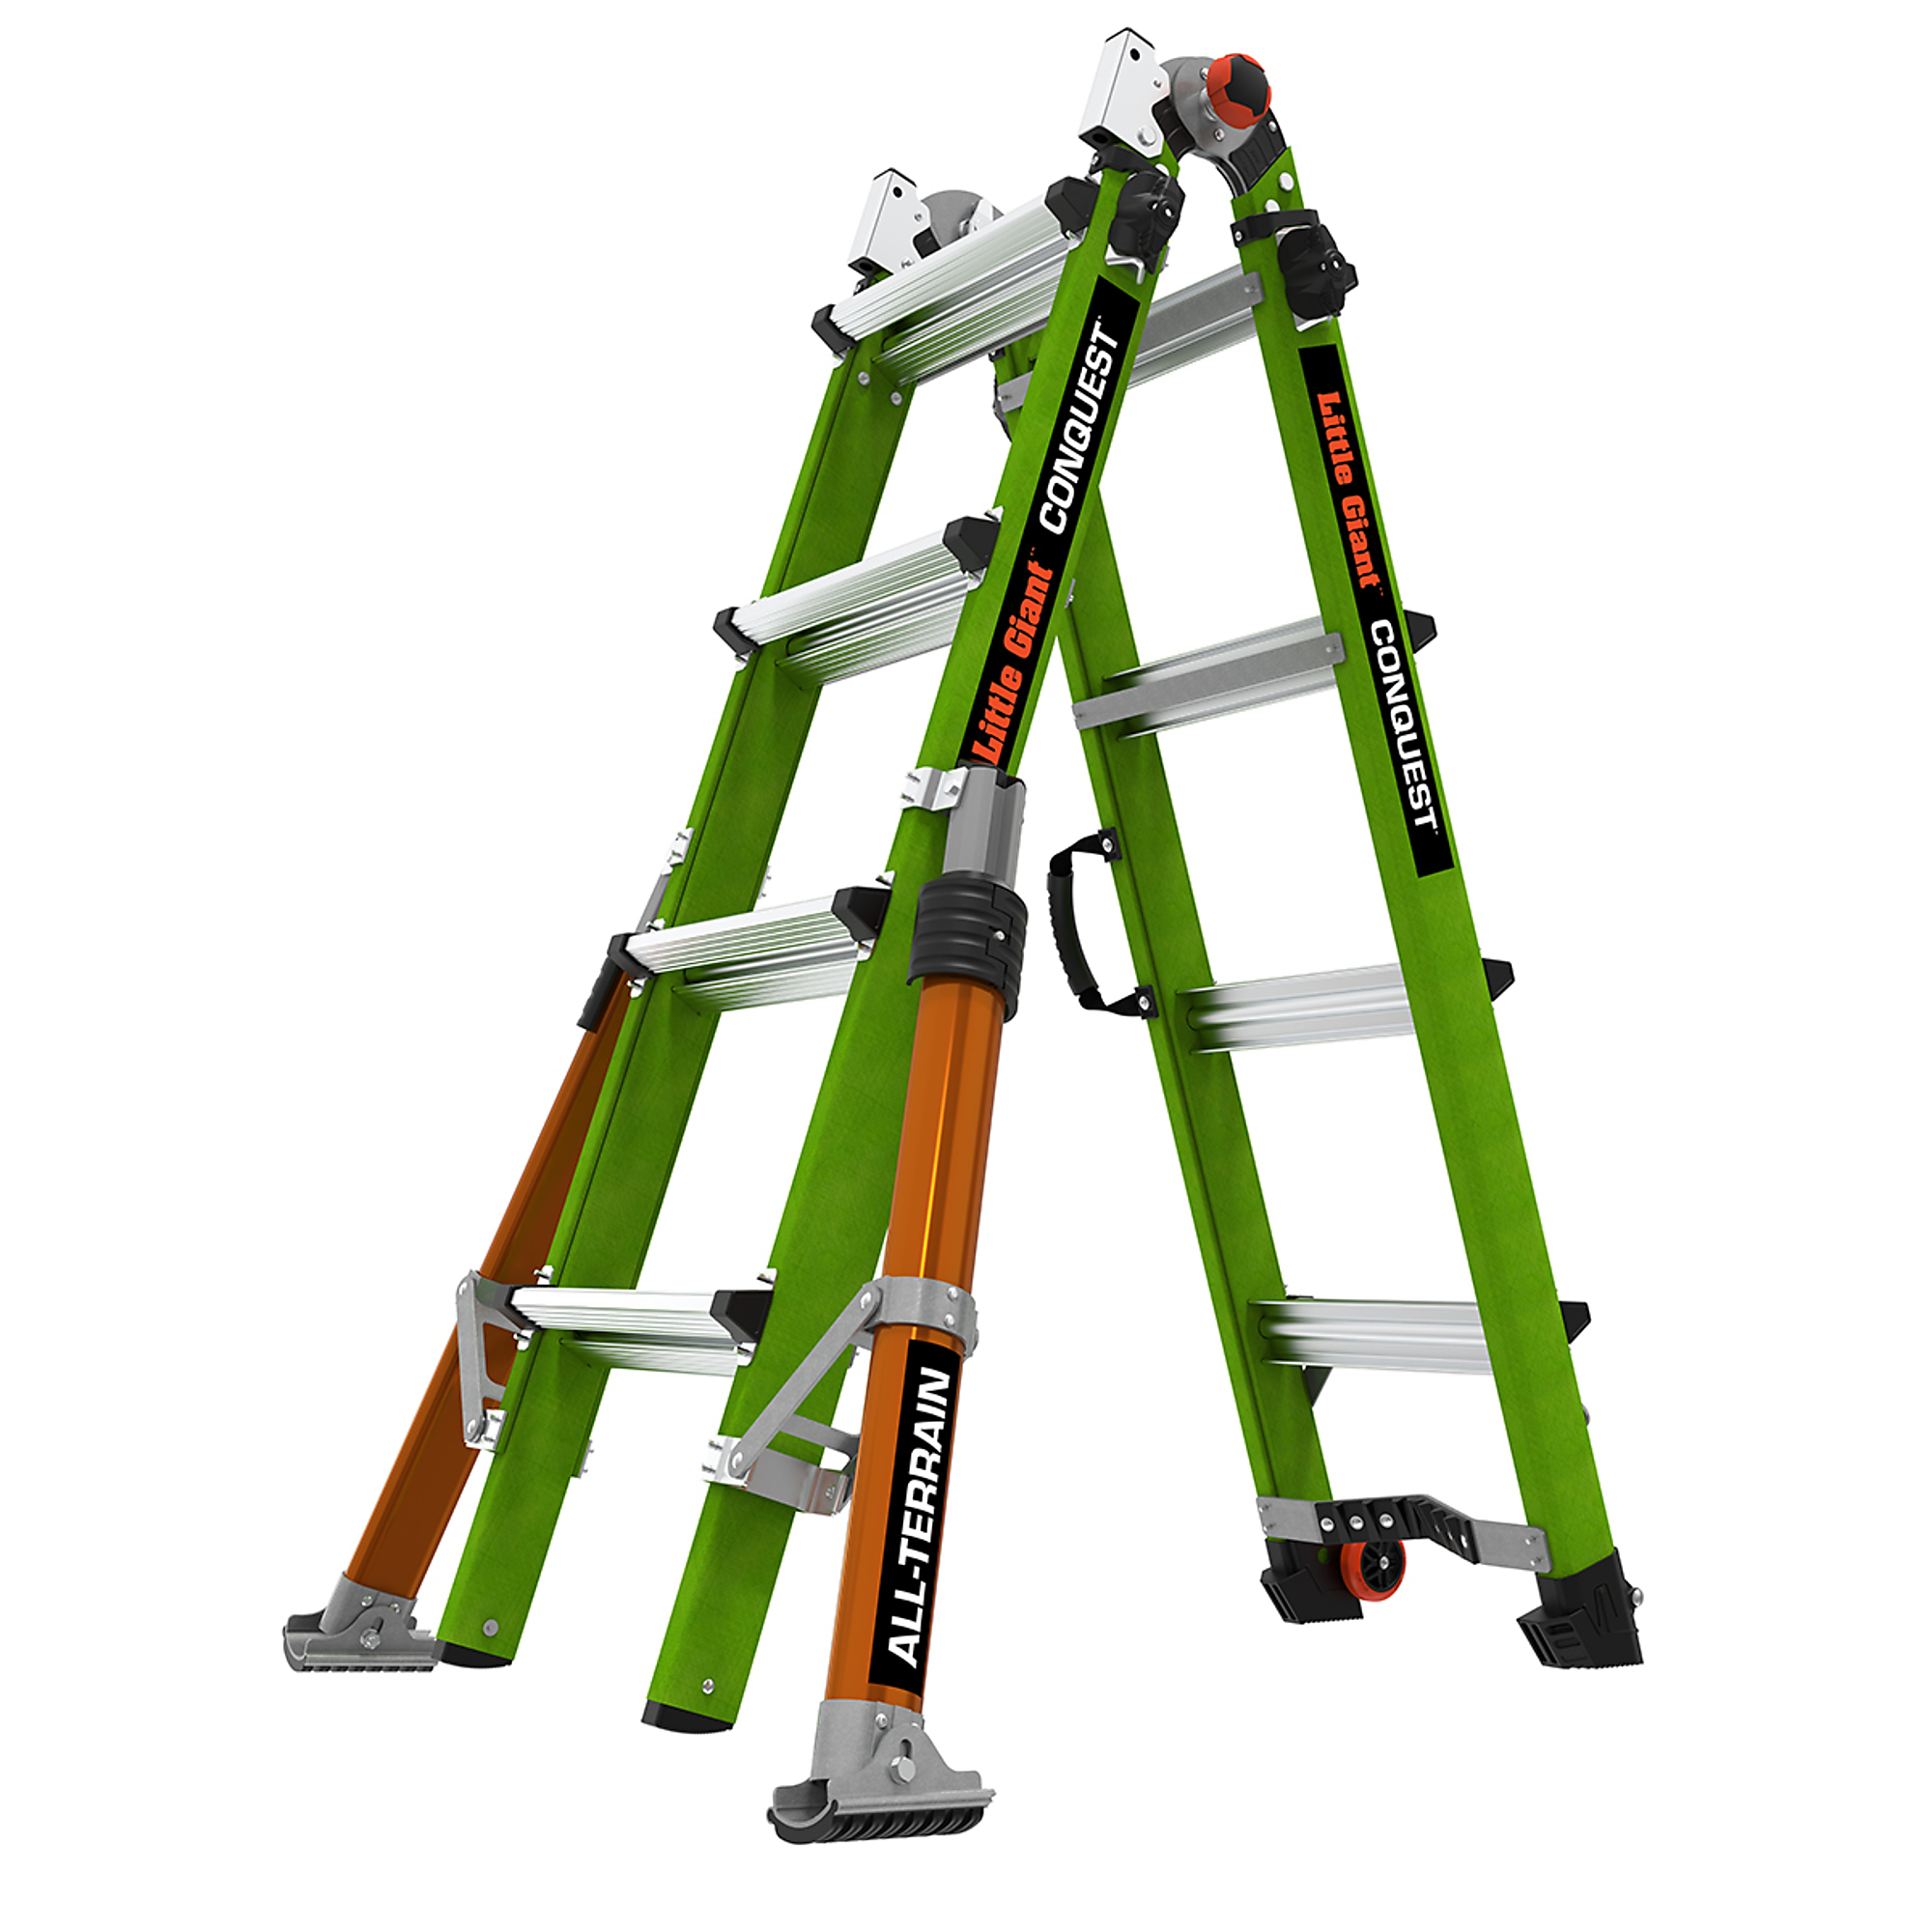 Little Giant Ladder, CONQUEST ALL-TERRAIN 17 Fiberglass Arti Ext Ladder, Height 17 ft, Capacity 300 lb, Material Fiberglass, Model 17107-001